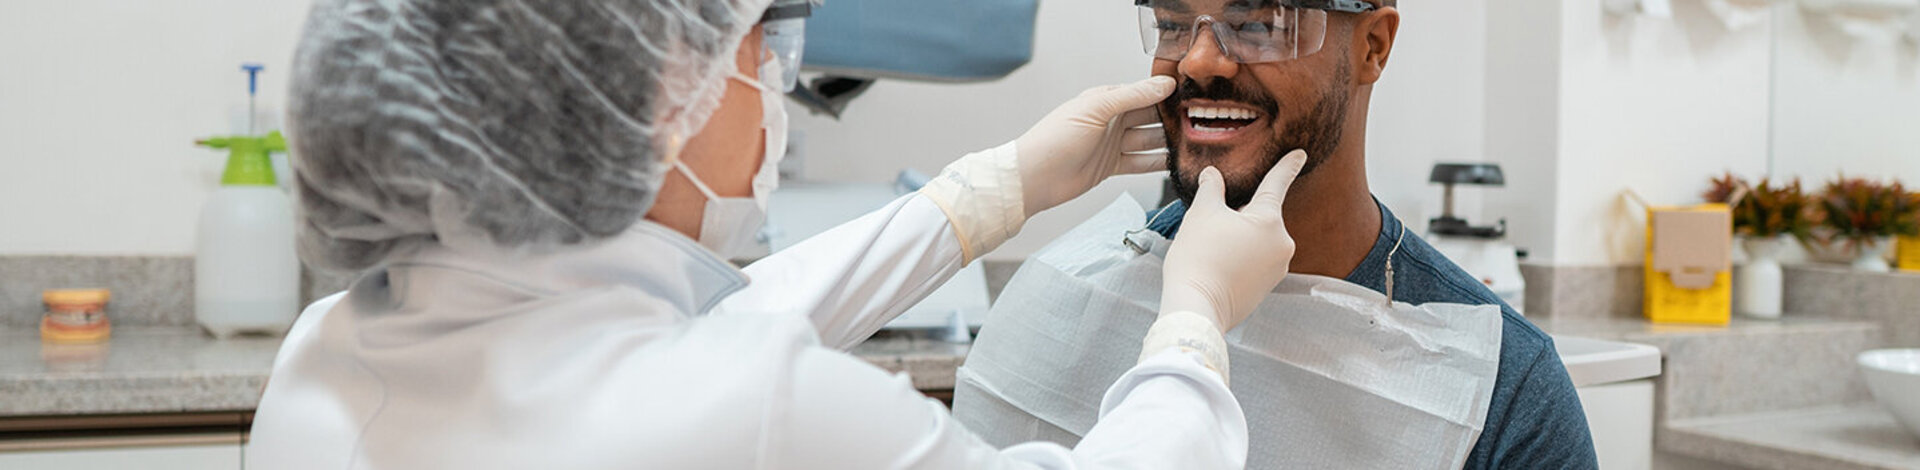 Ein Zahnarzt tastet den Kiefer eines Patienten ab. Beide tragen Schutzkleidung, um eine Infektion mit dem Coronavirus in der AOK-Zahnklinik zu verhindern.